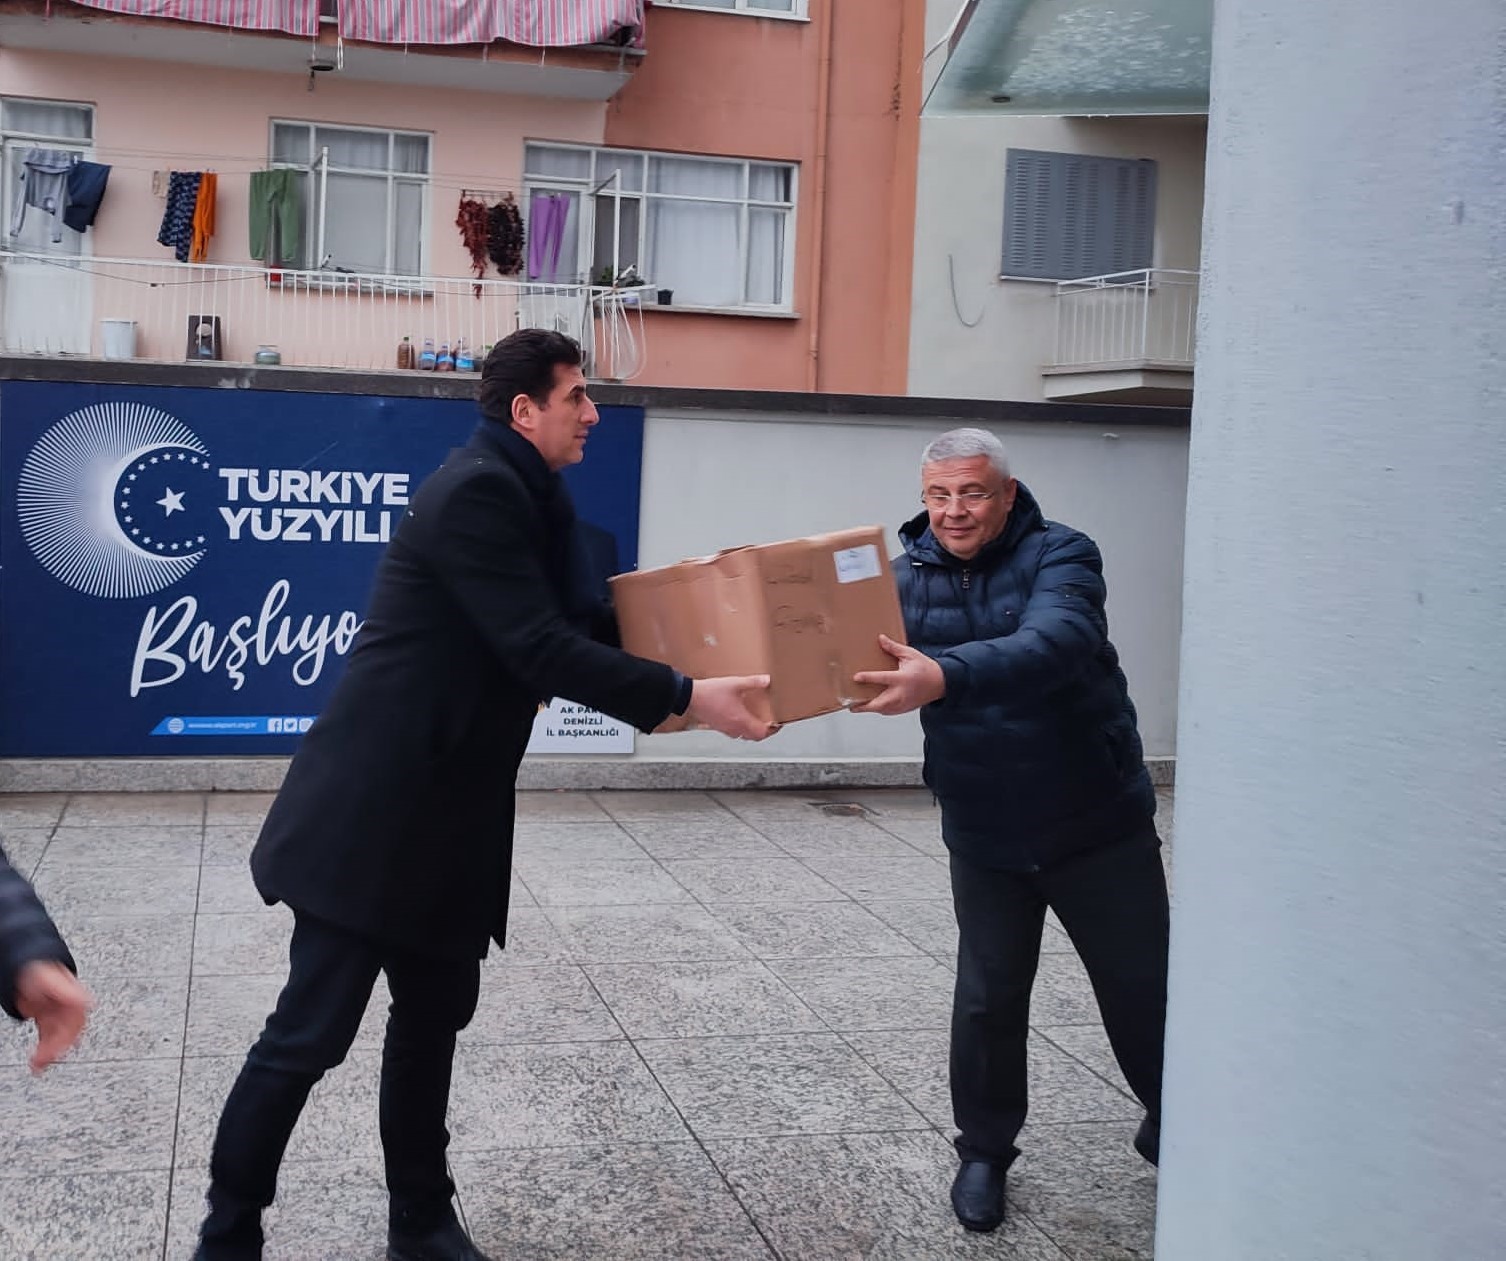 AK Parti Denizli, depremzedeler için seferber oldu